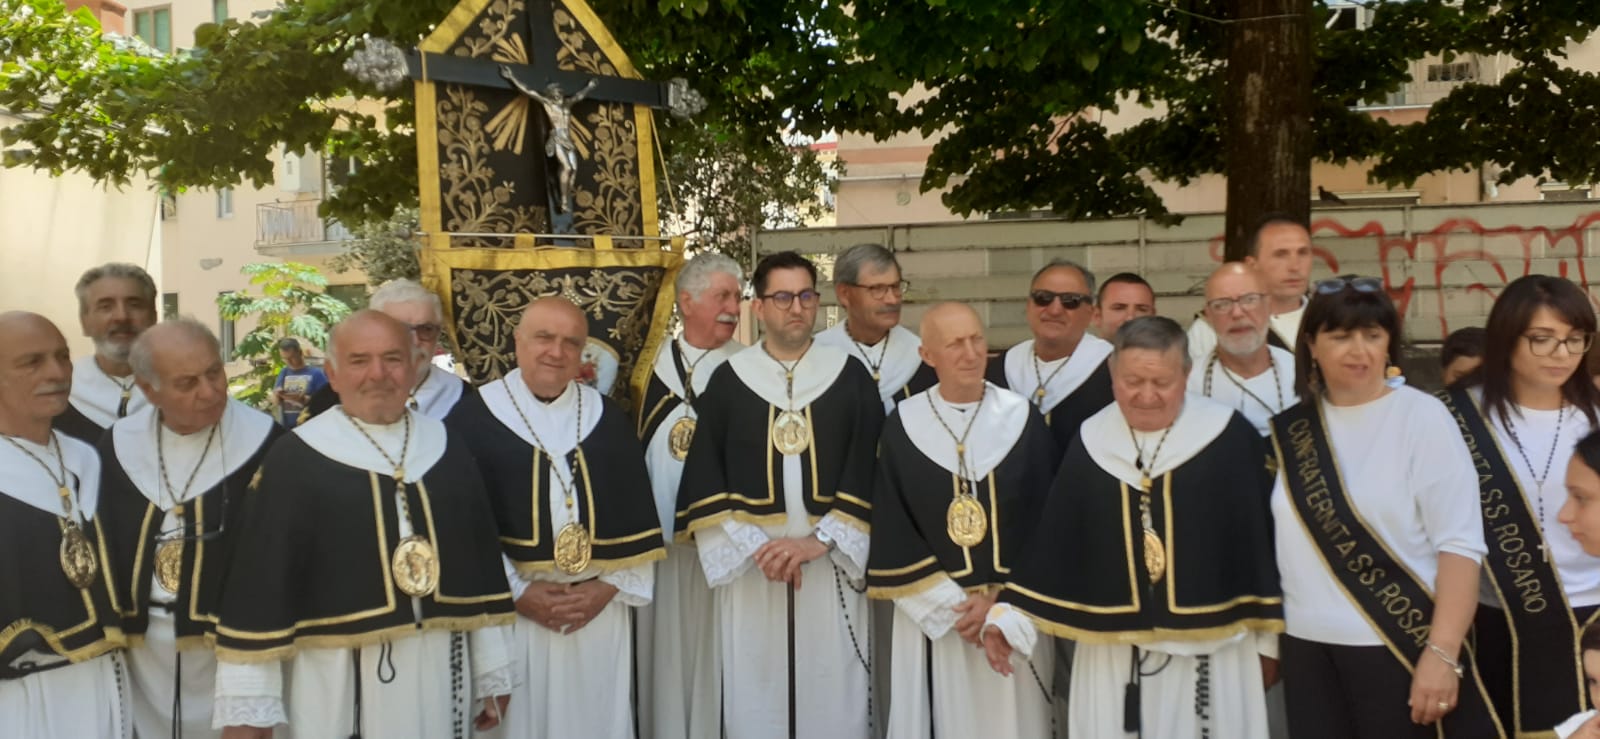 Salerno: S.E. Di Donna al Santuario Maria SS. del Carmine con Arciconfraternite